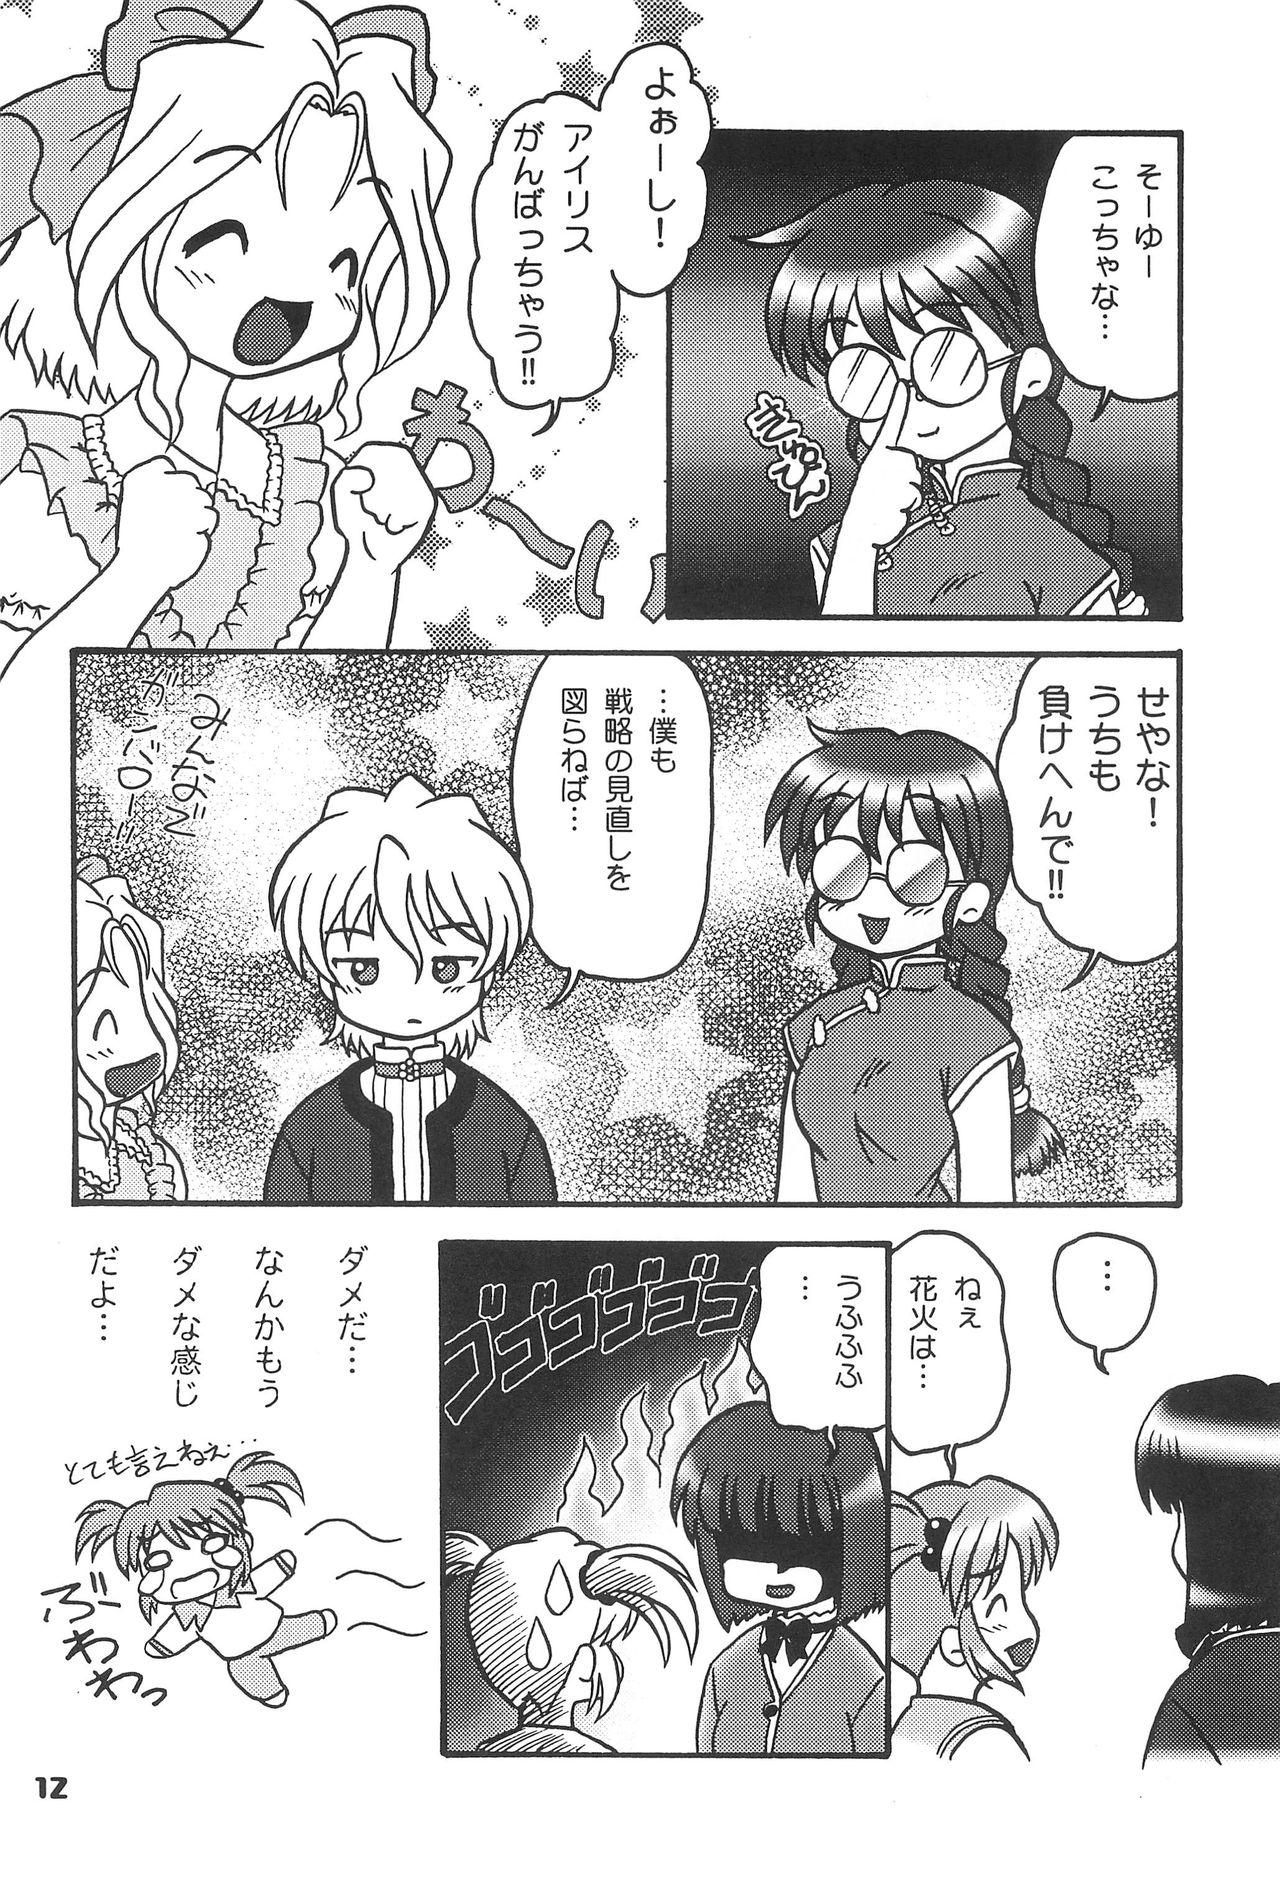 Corno Kono Chiisana Mune no Uchi 2 - Sakura taisen Cash - Page 11